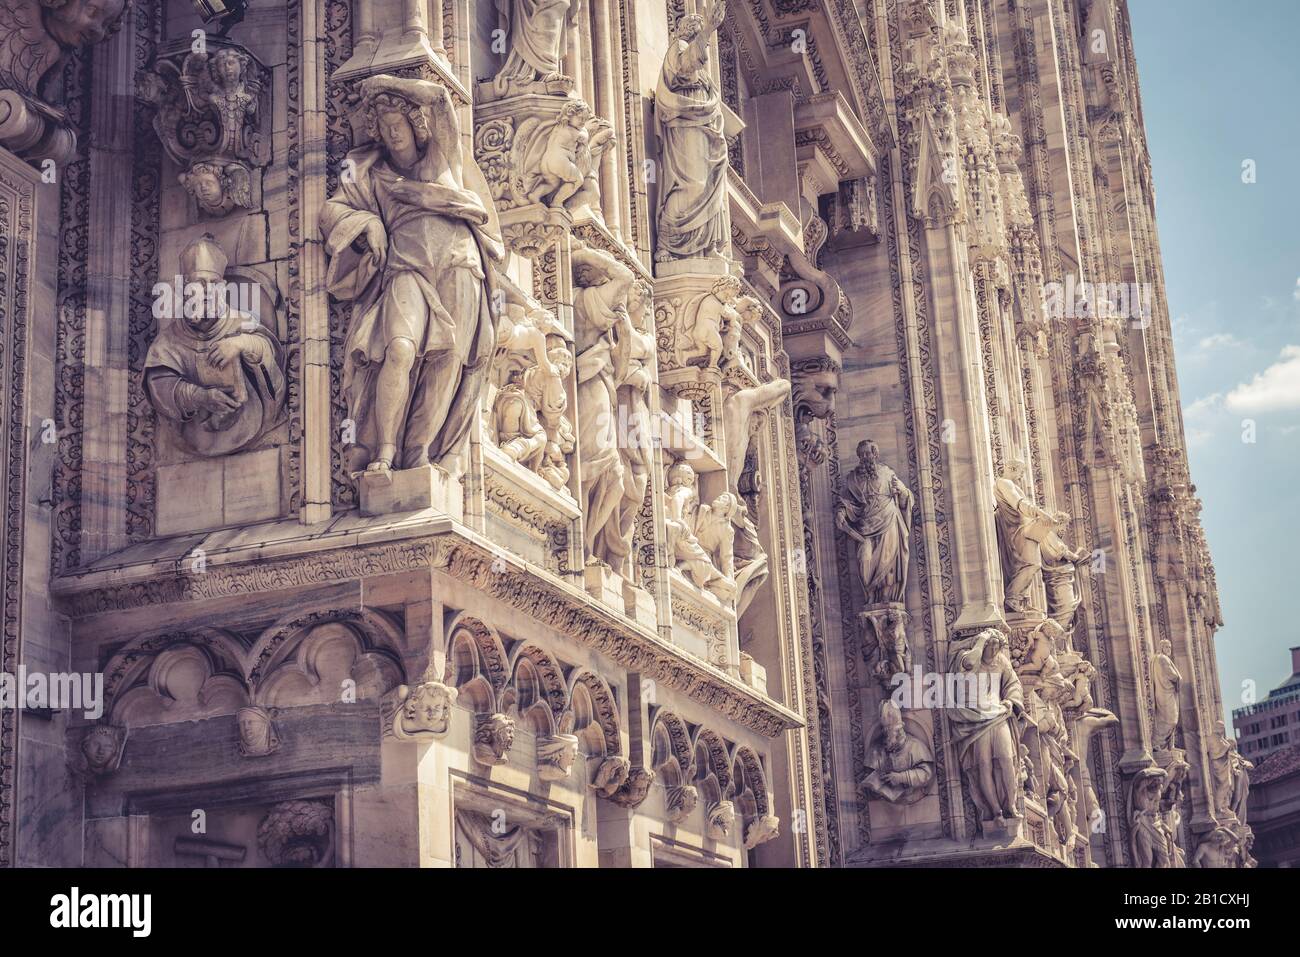 Particolare della facciata del Duomo di Milano. Il Duomo di Milano è la chiesa più grande d'Italia e la quinta più grande d'inverno Foto Stock